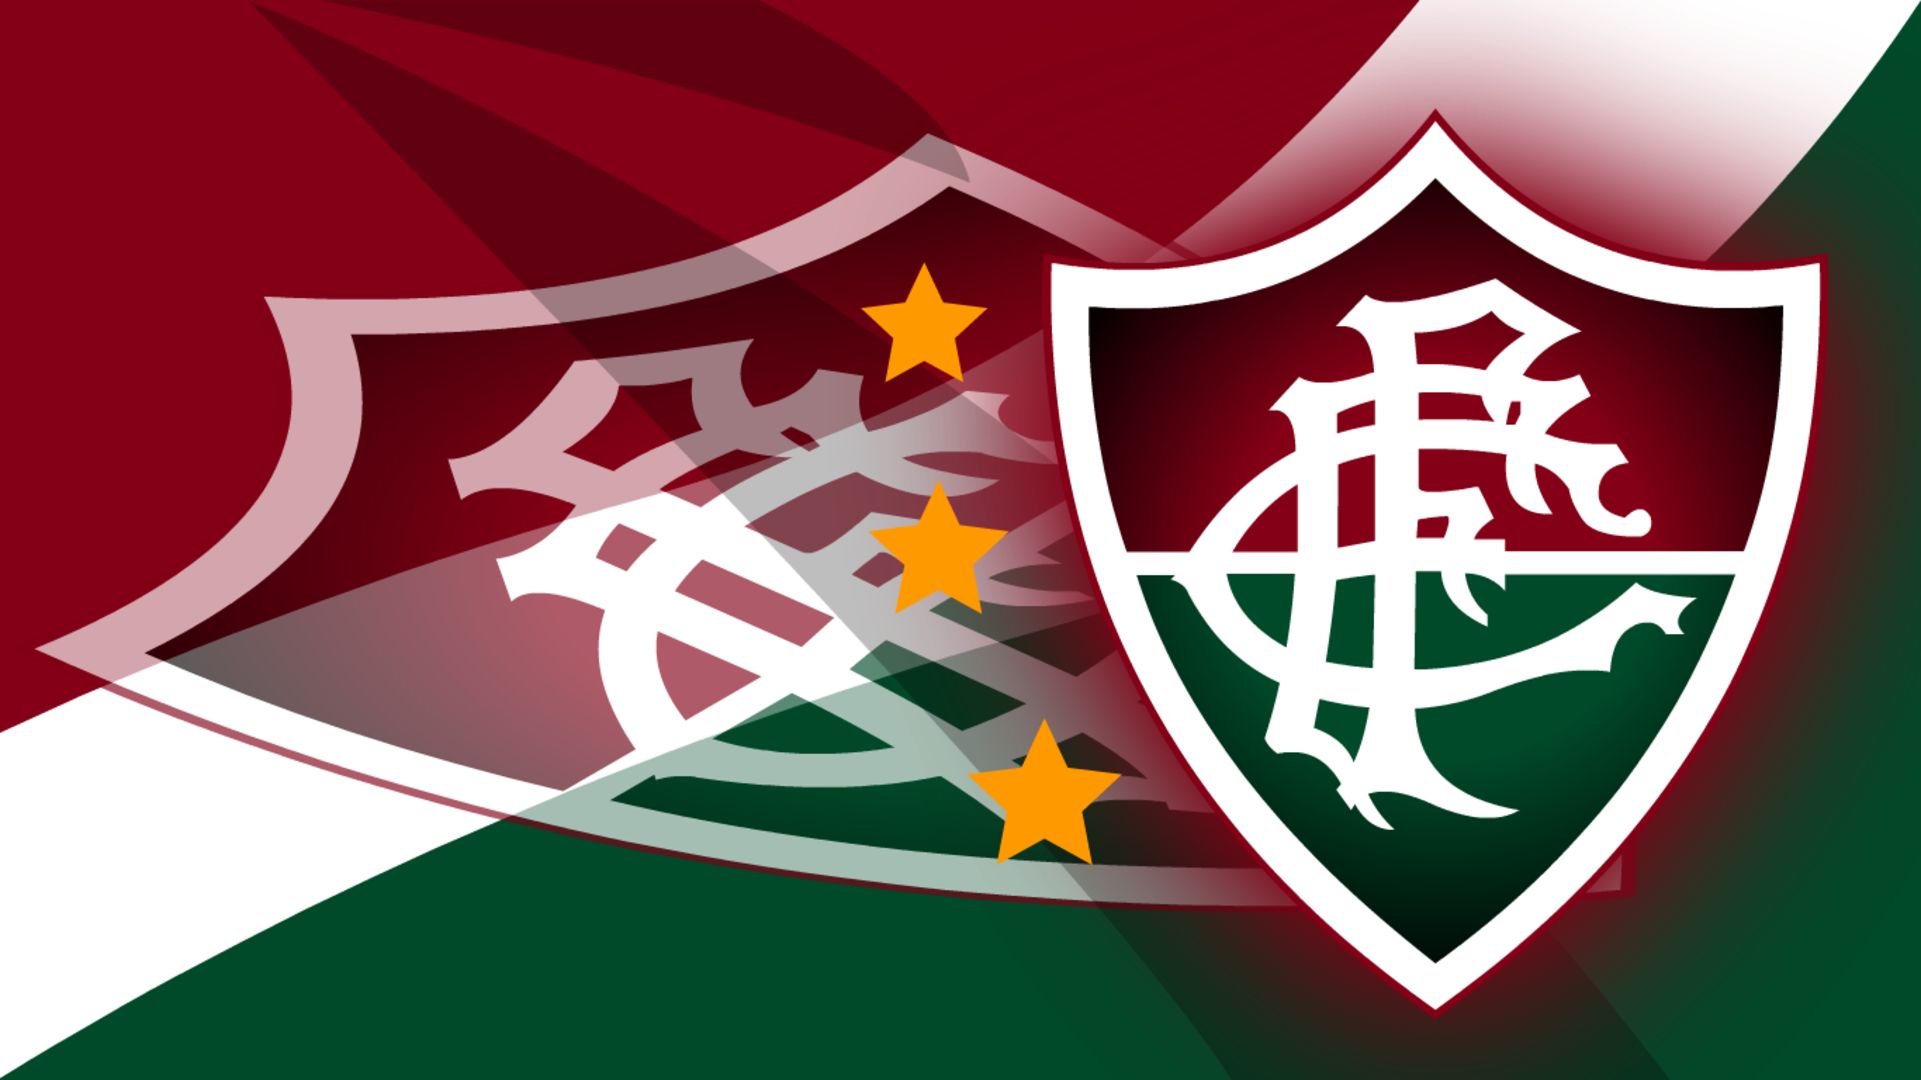 Fluminense Fc  Free Stock Photos